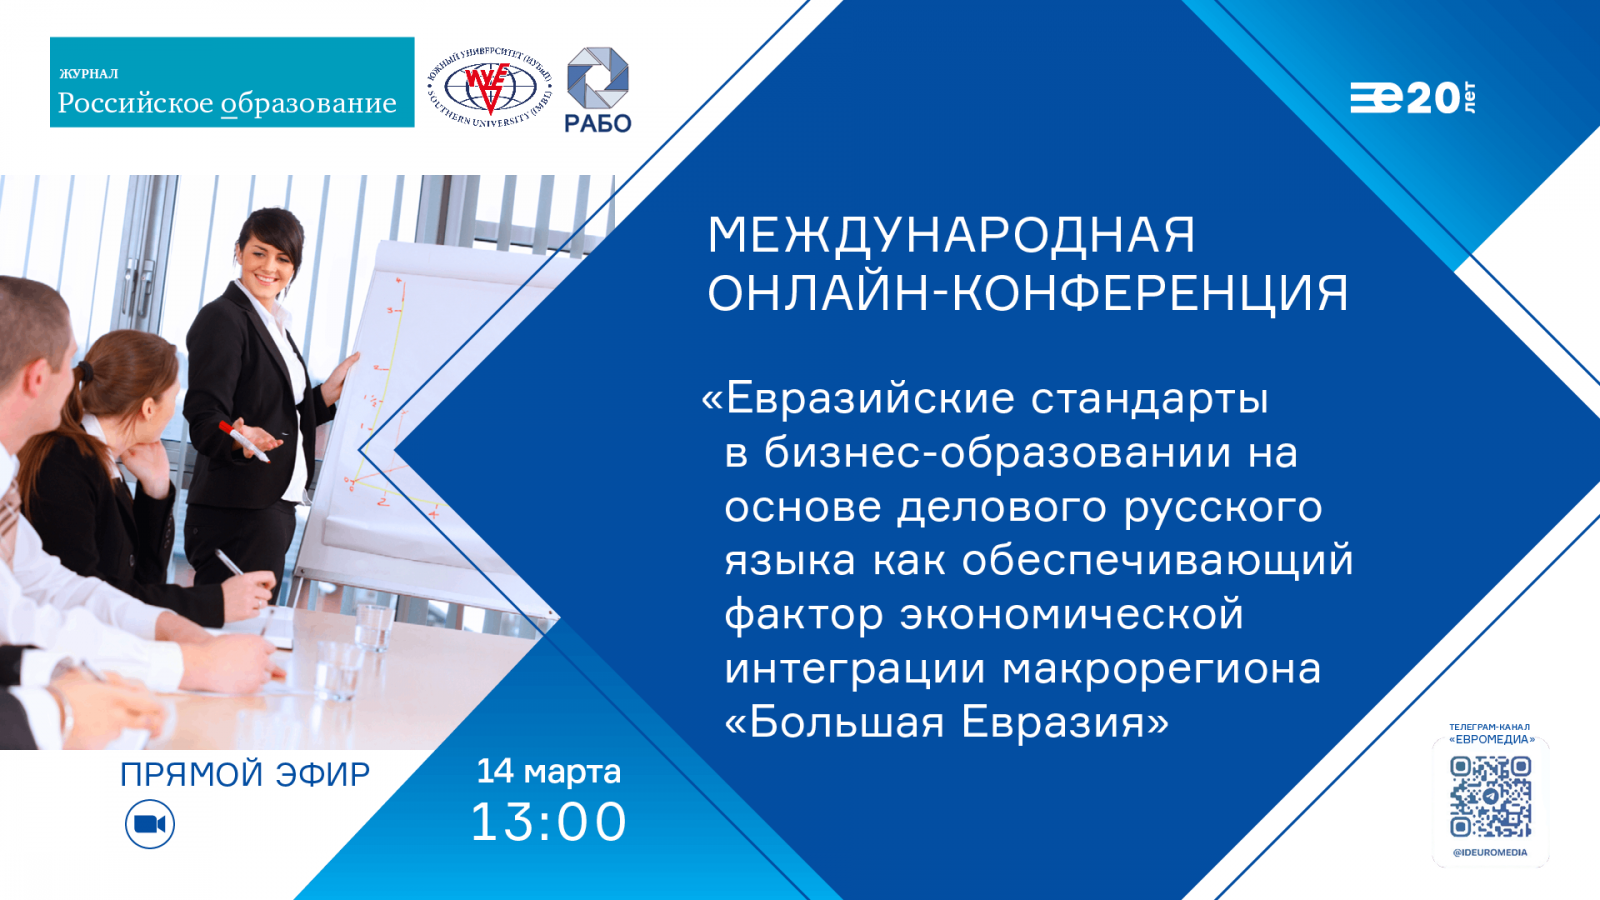 14 марта состоится международная онлайн-конференция, посвященная евразийским стандартам в бизнес-образовании. ЕвроМедиа